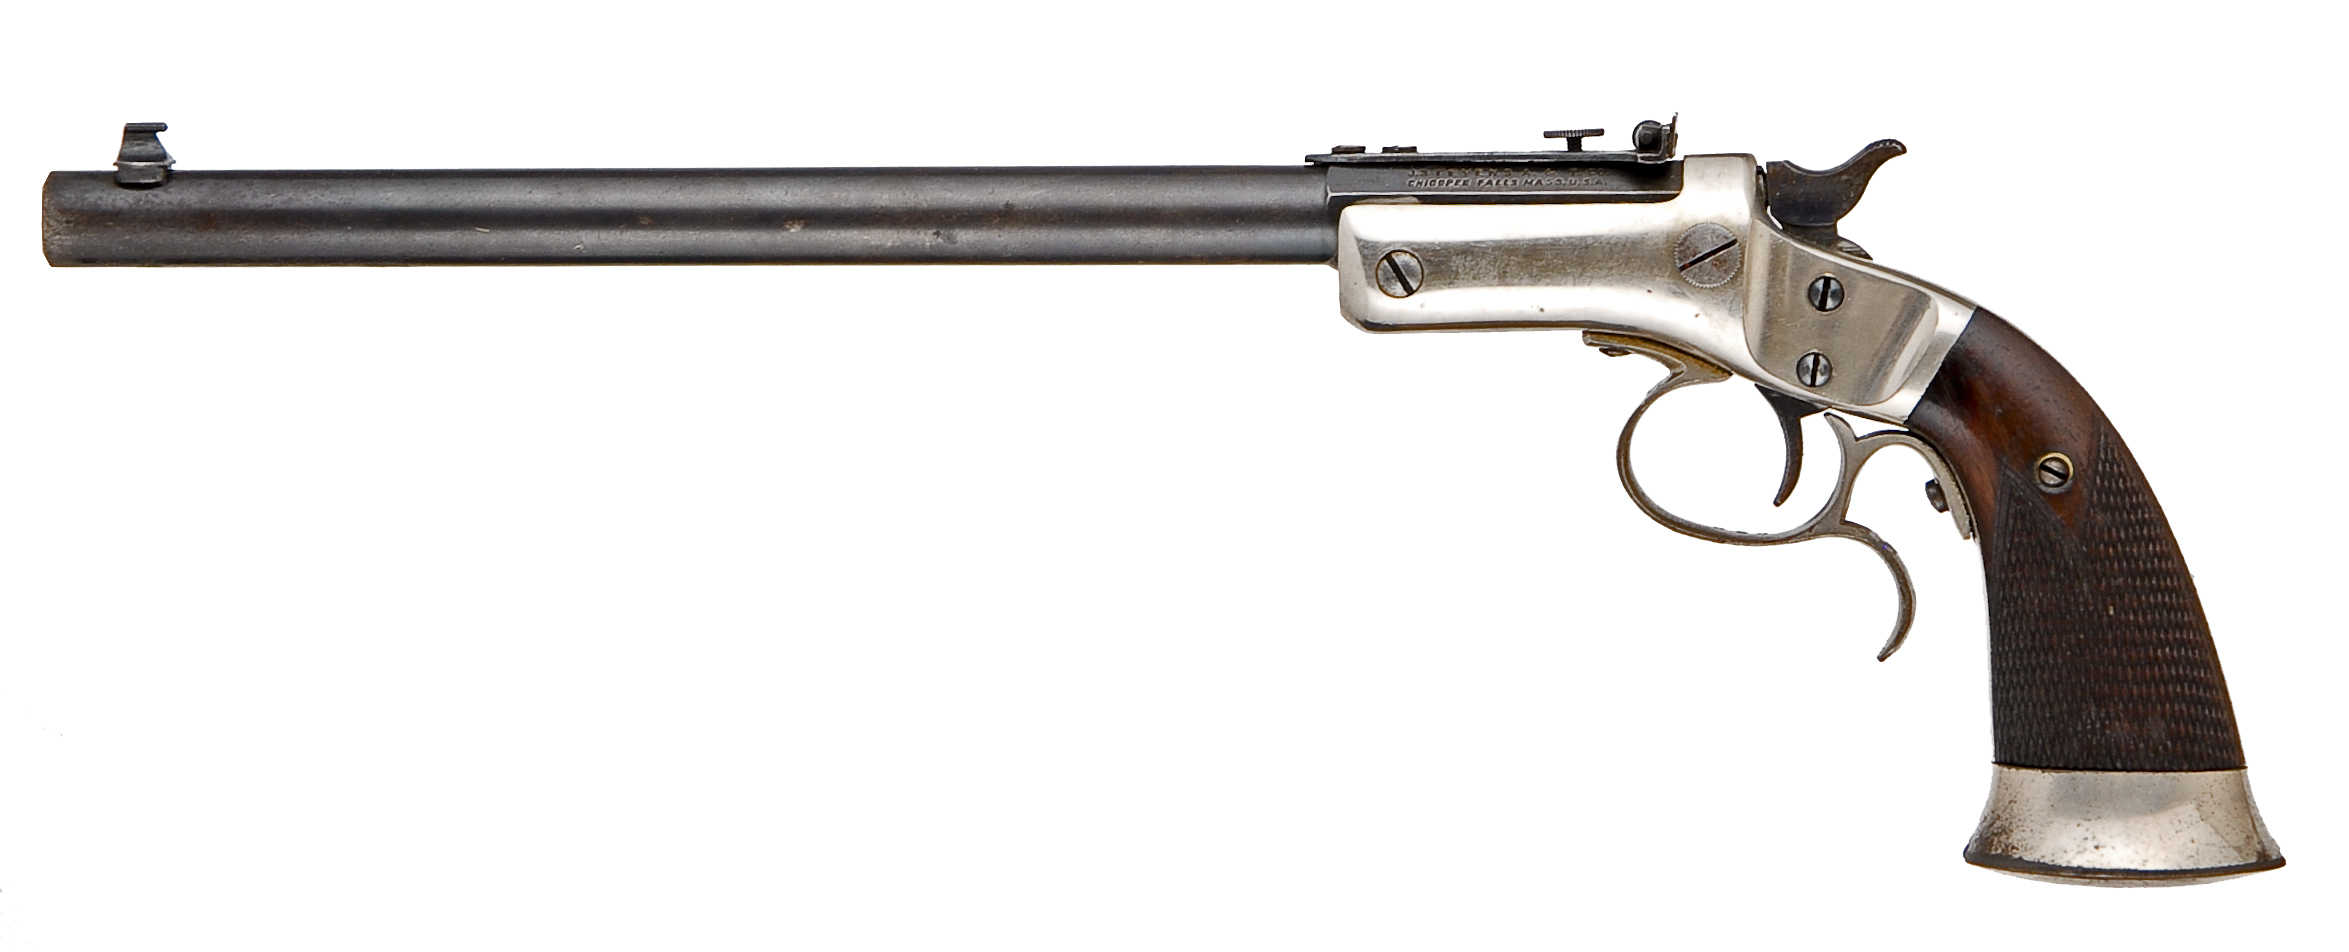 Antique Pistols » Goergen's Gun Shop, Inc. -